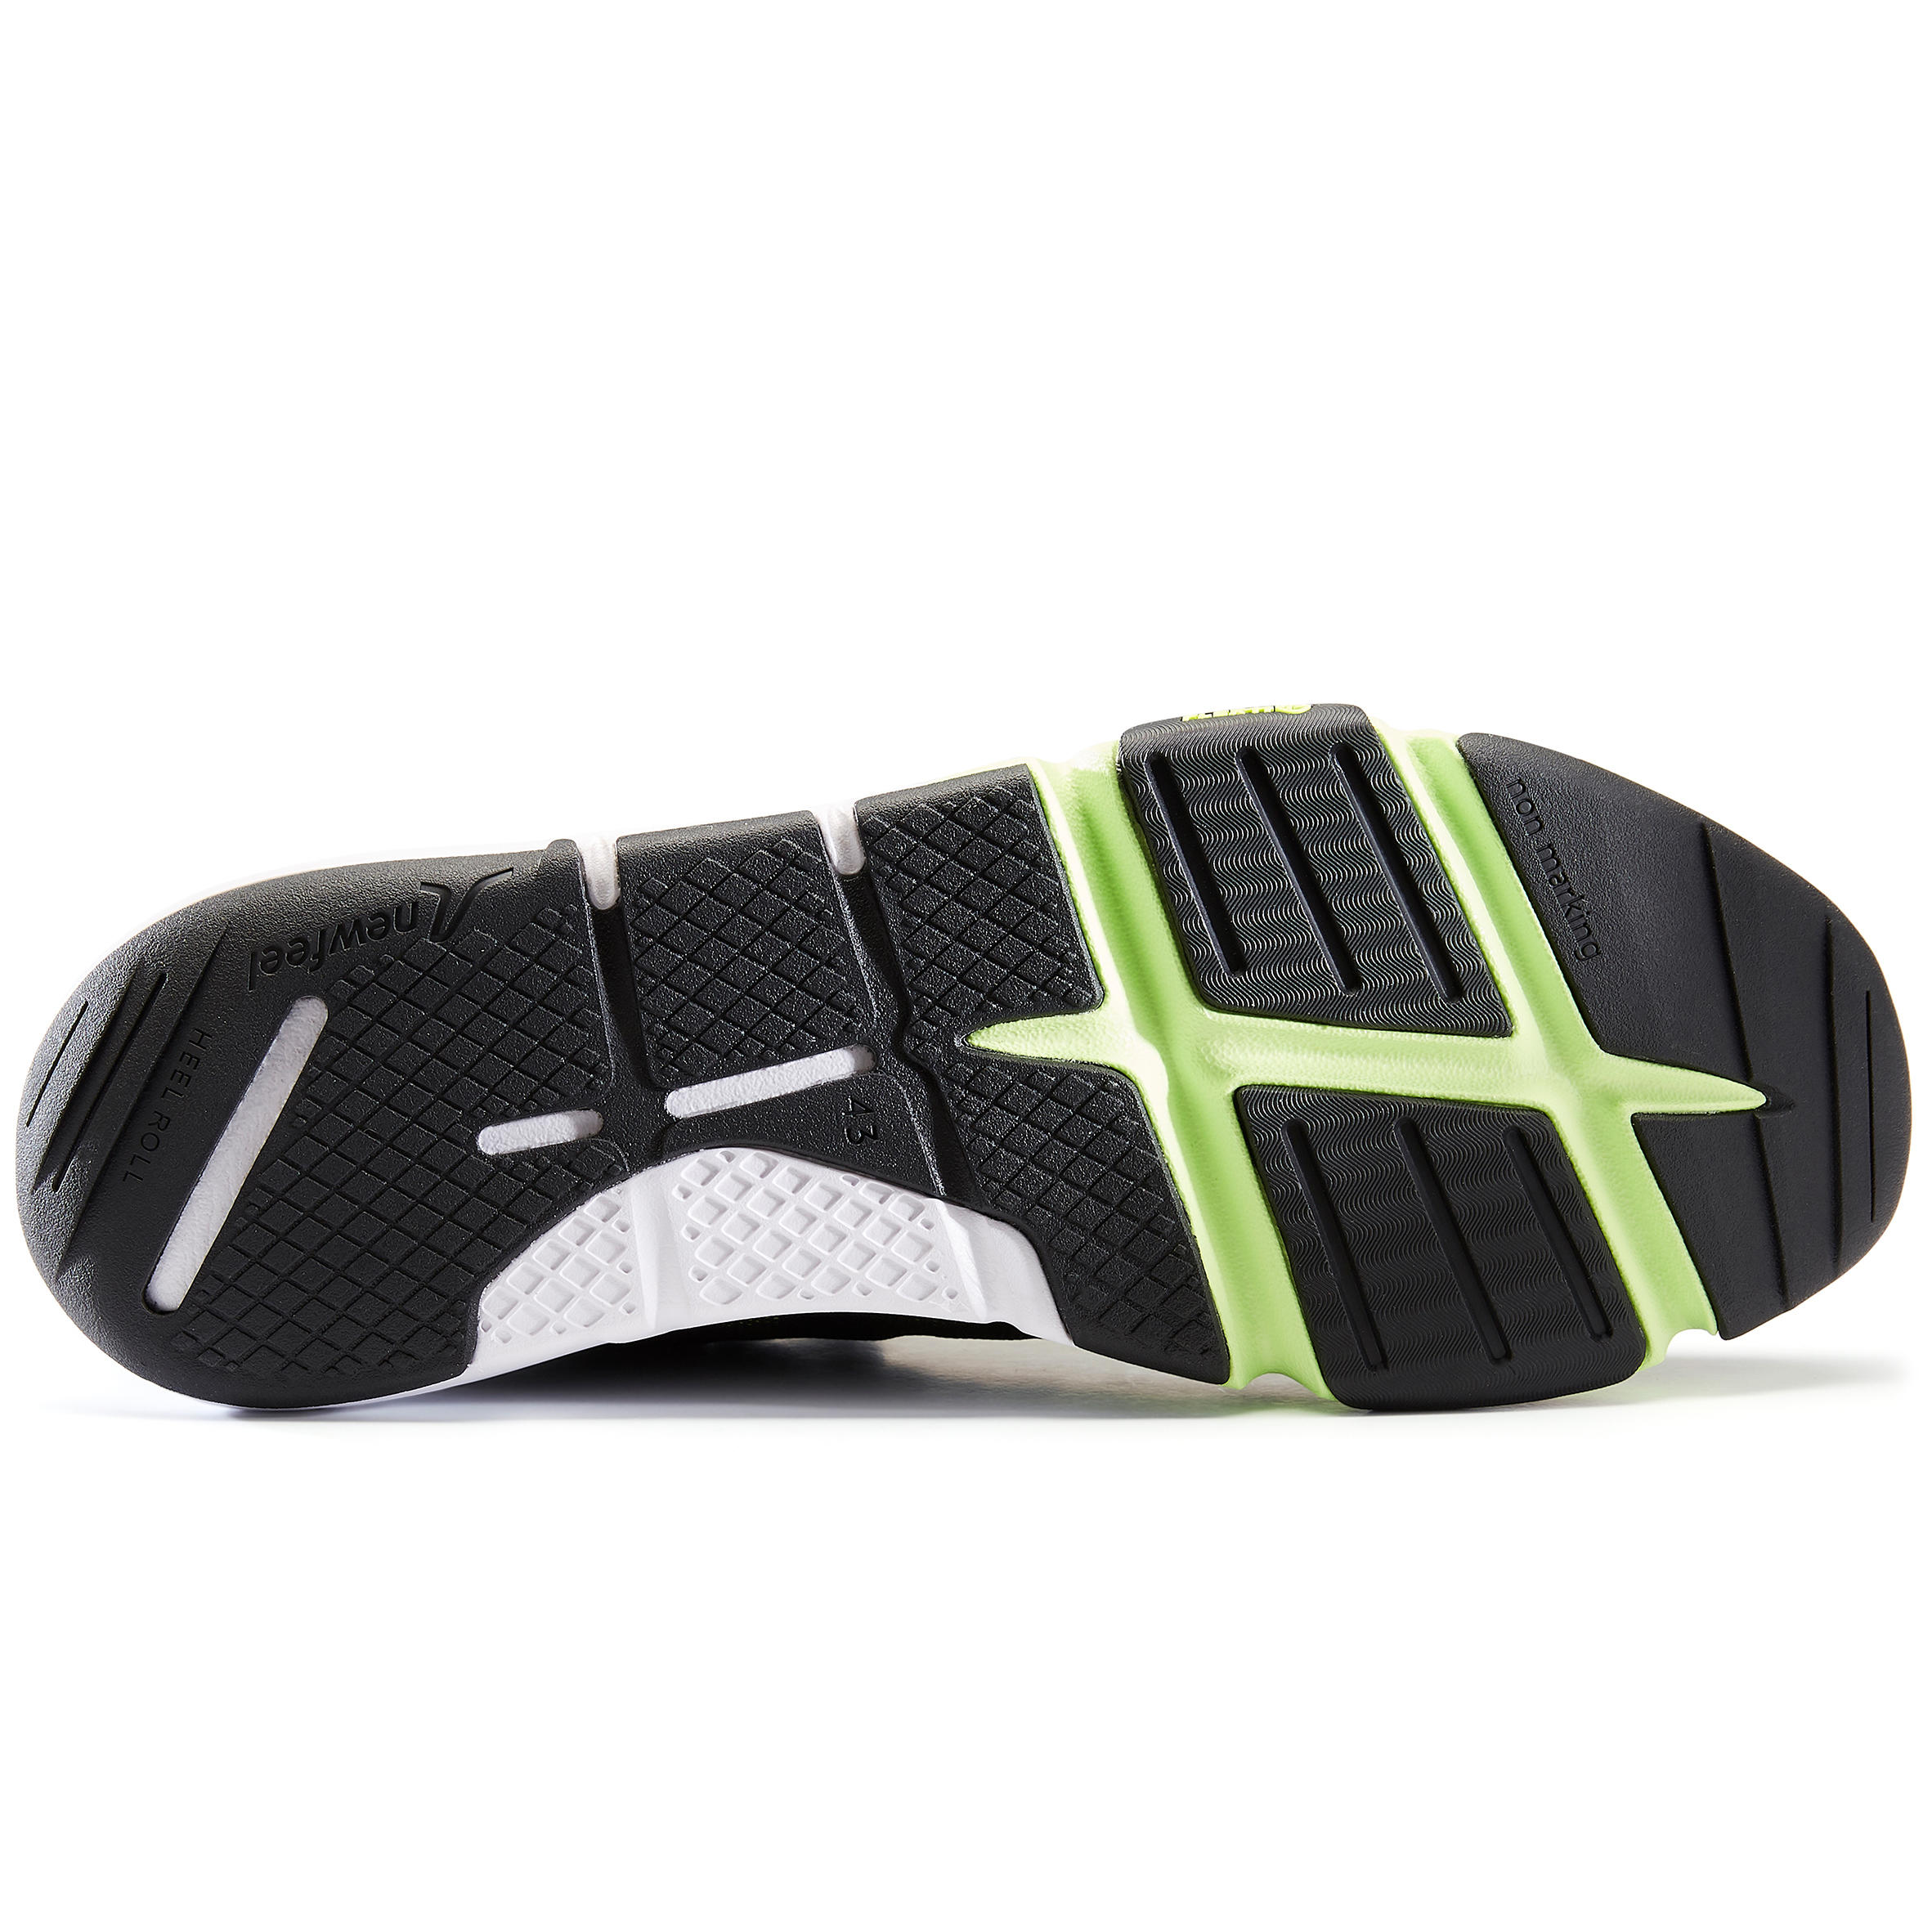 Men's Fitness Walking Shoes PW 540 Flex-H+ - khaki/green 6/11